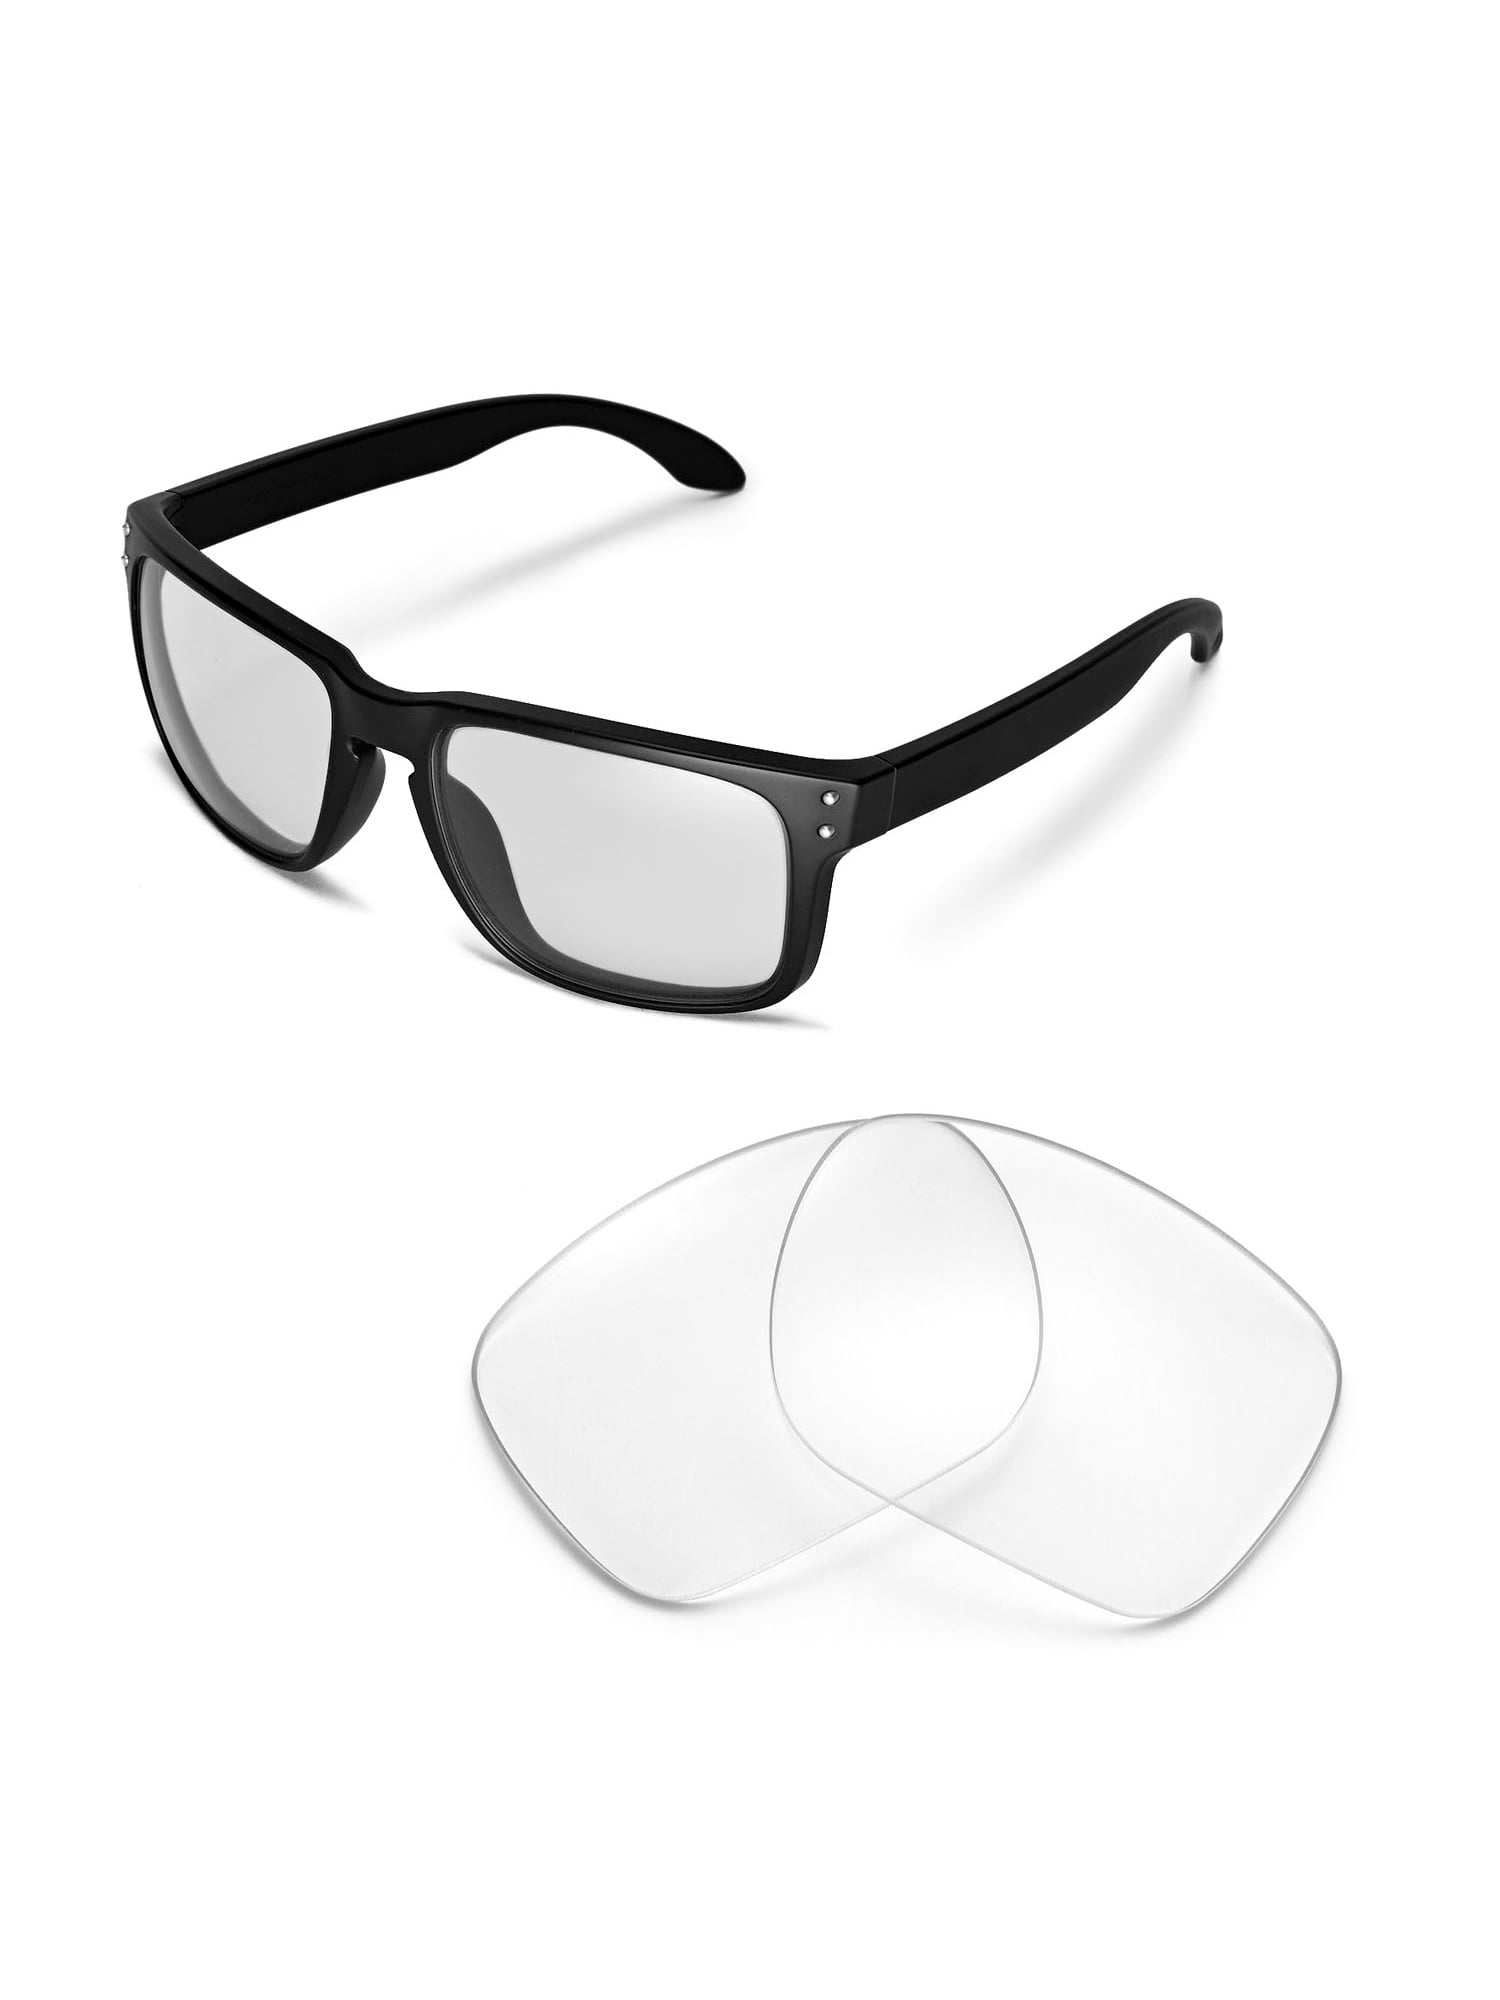 fyrretræ Konkurrence dvs. Walleva Clear Replacement Lenses for Oakley Holbrook Sunglasses -  Walmart.com